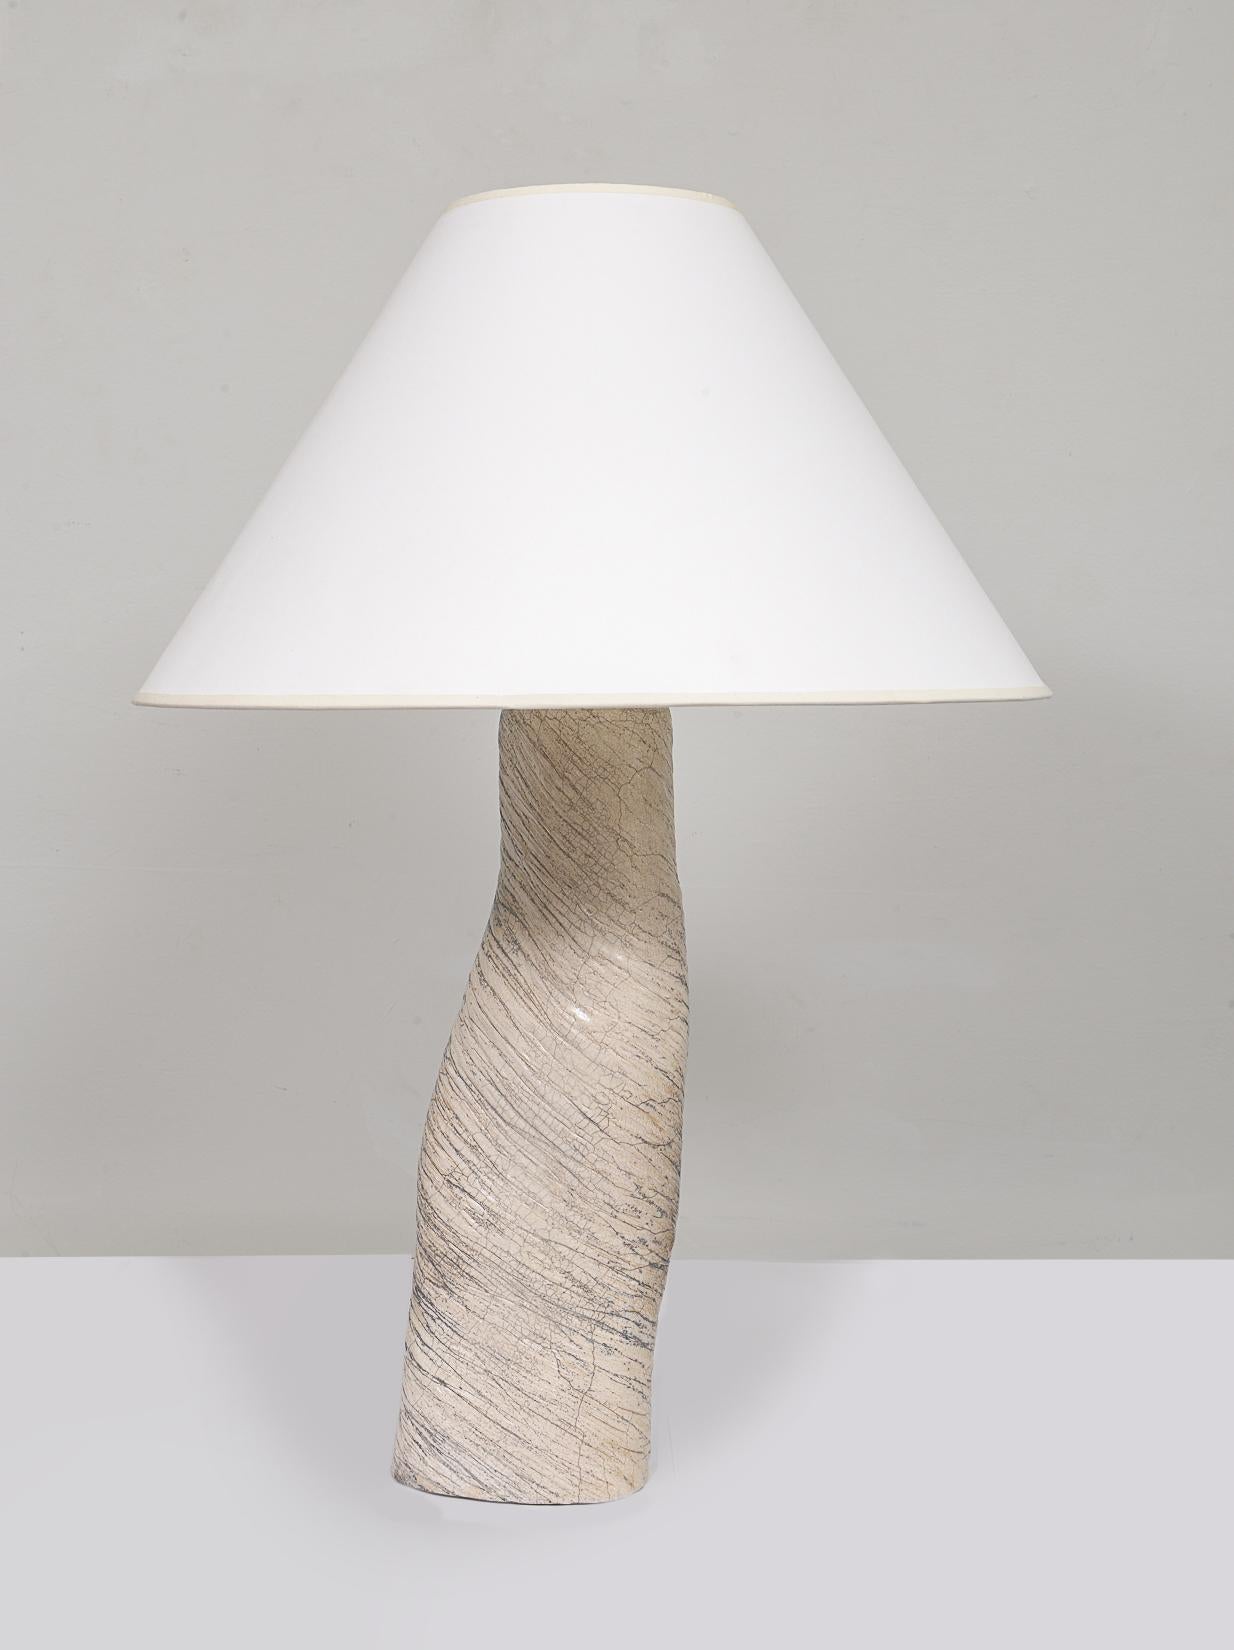 Lampe ondulée en céramique sur mesure avec accessoires en laiton.
Cette lampe peut être personnalisée  selon vos spécifications.
Le délai de livraison est de 12 semaines maximum.
Une lampe est actuellement disponible.